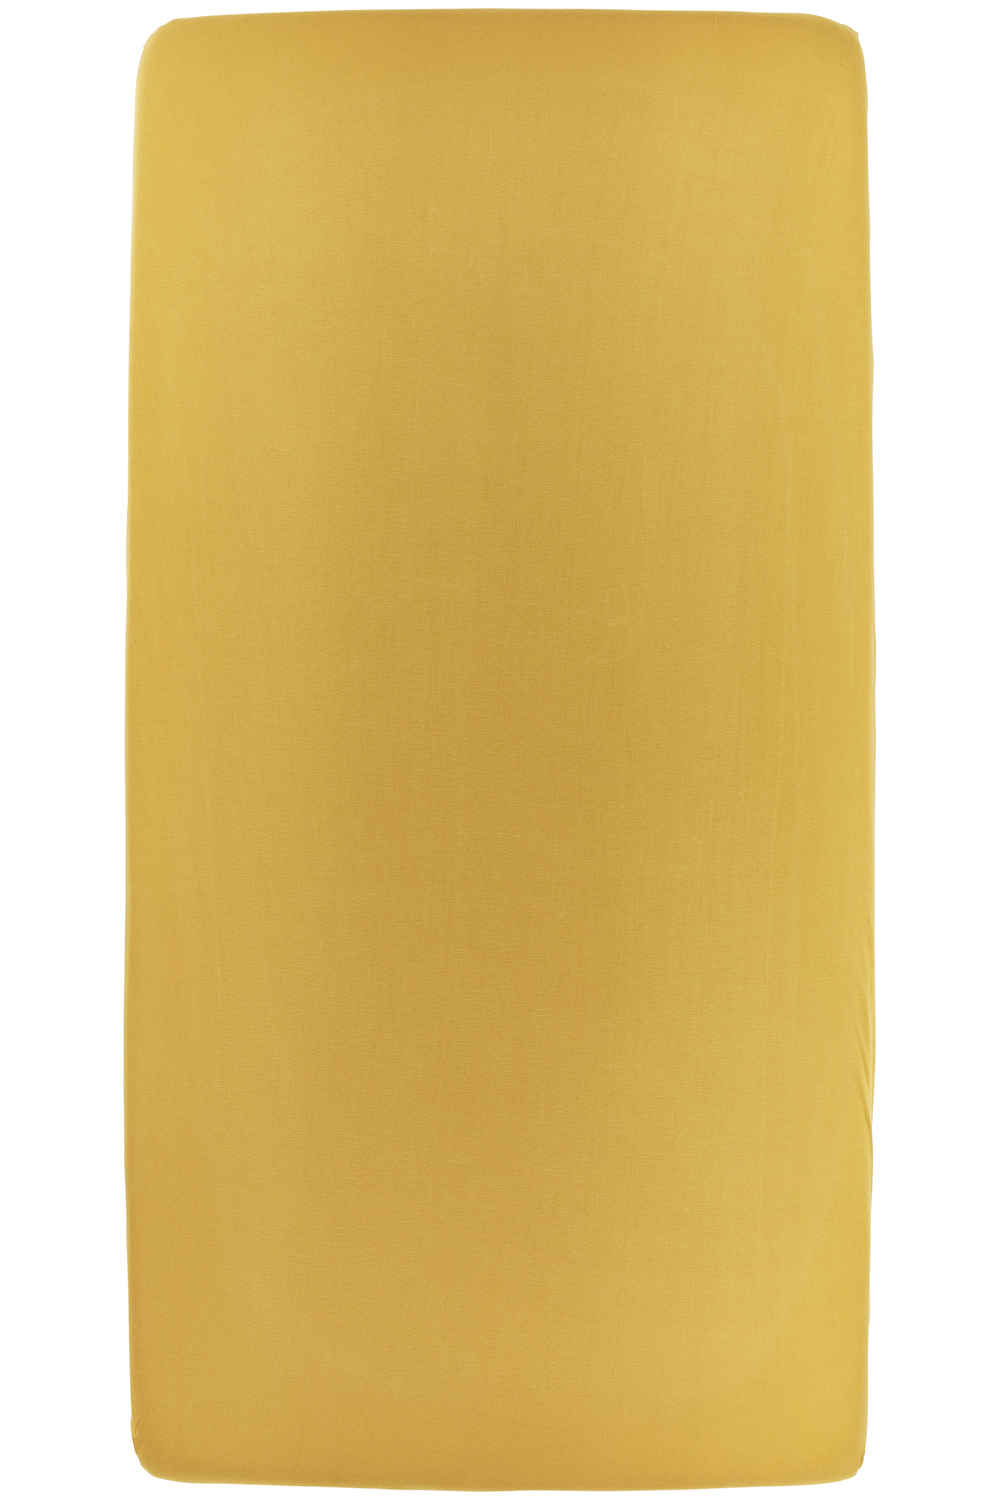 Hoeslaken eenpersoonsbed Uni - honey gold - 80x200cm